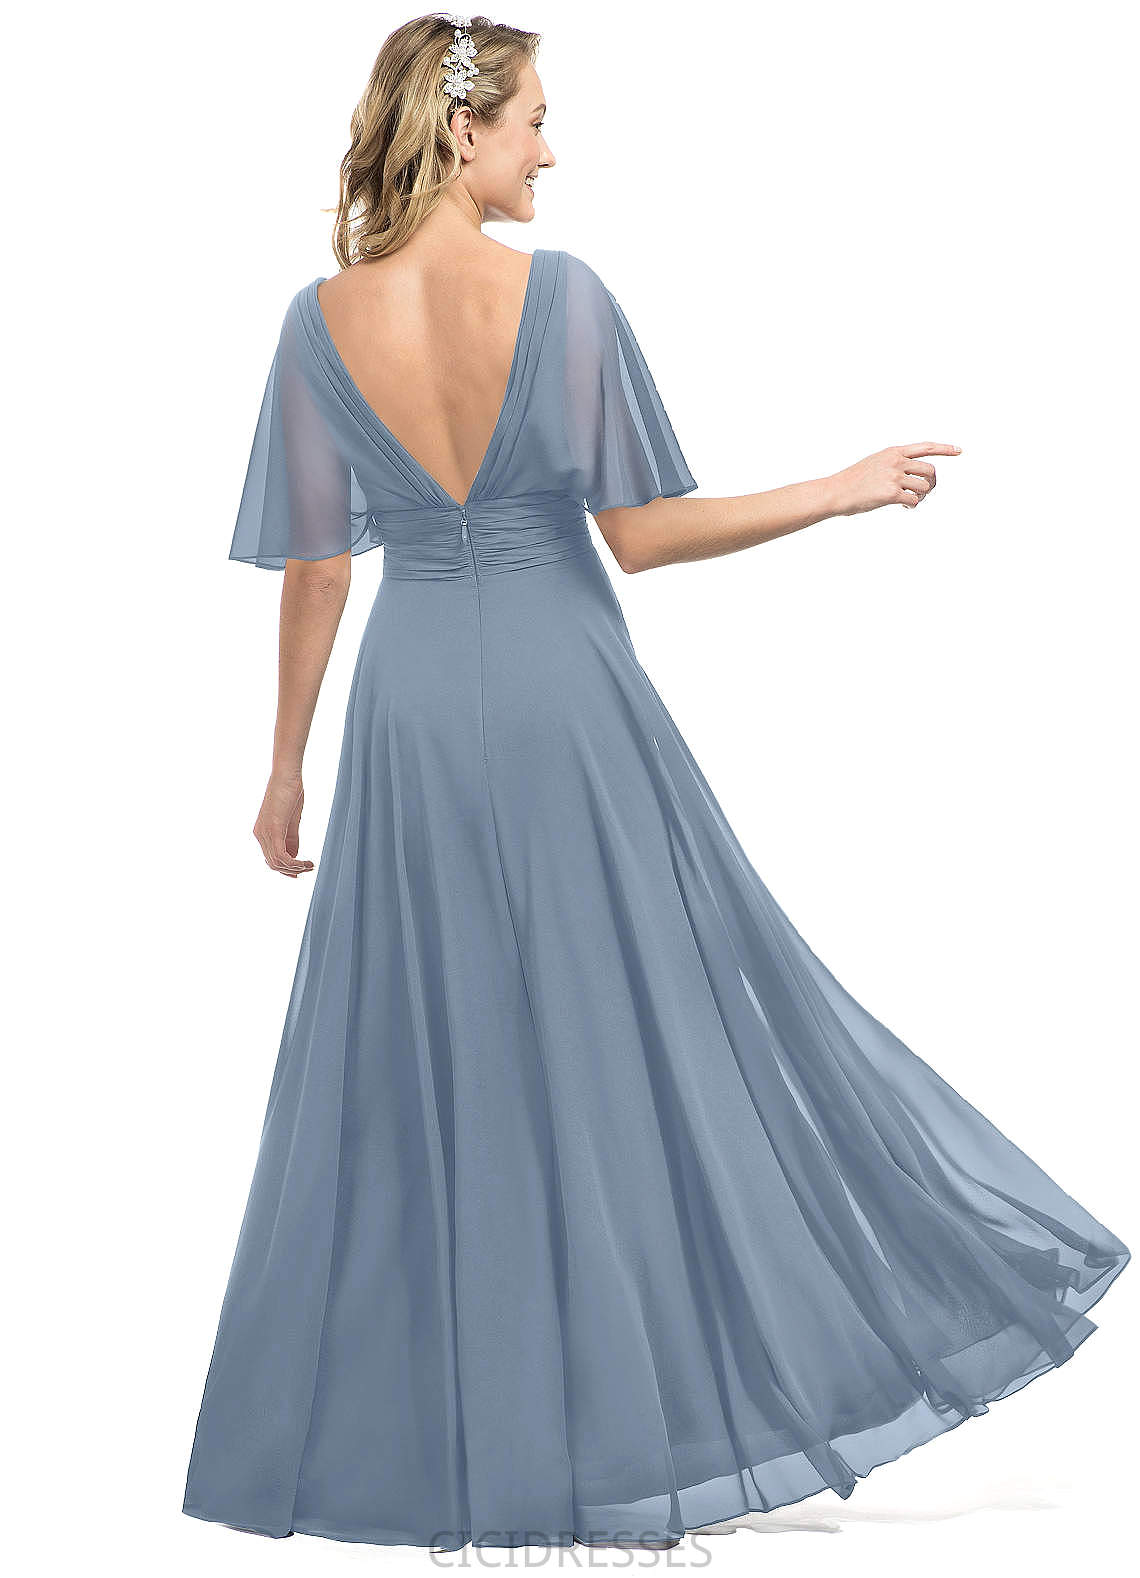 Maud Natural Waist Sleeveless V-Neck A-Line/Princess Floor Length Bridesmaid Dresses